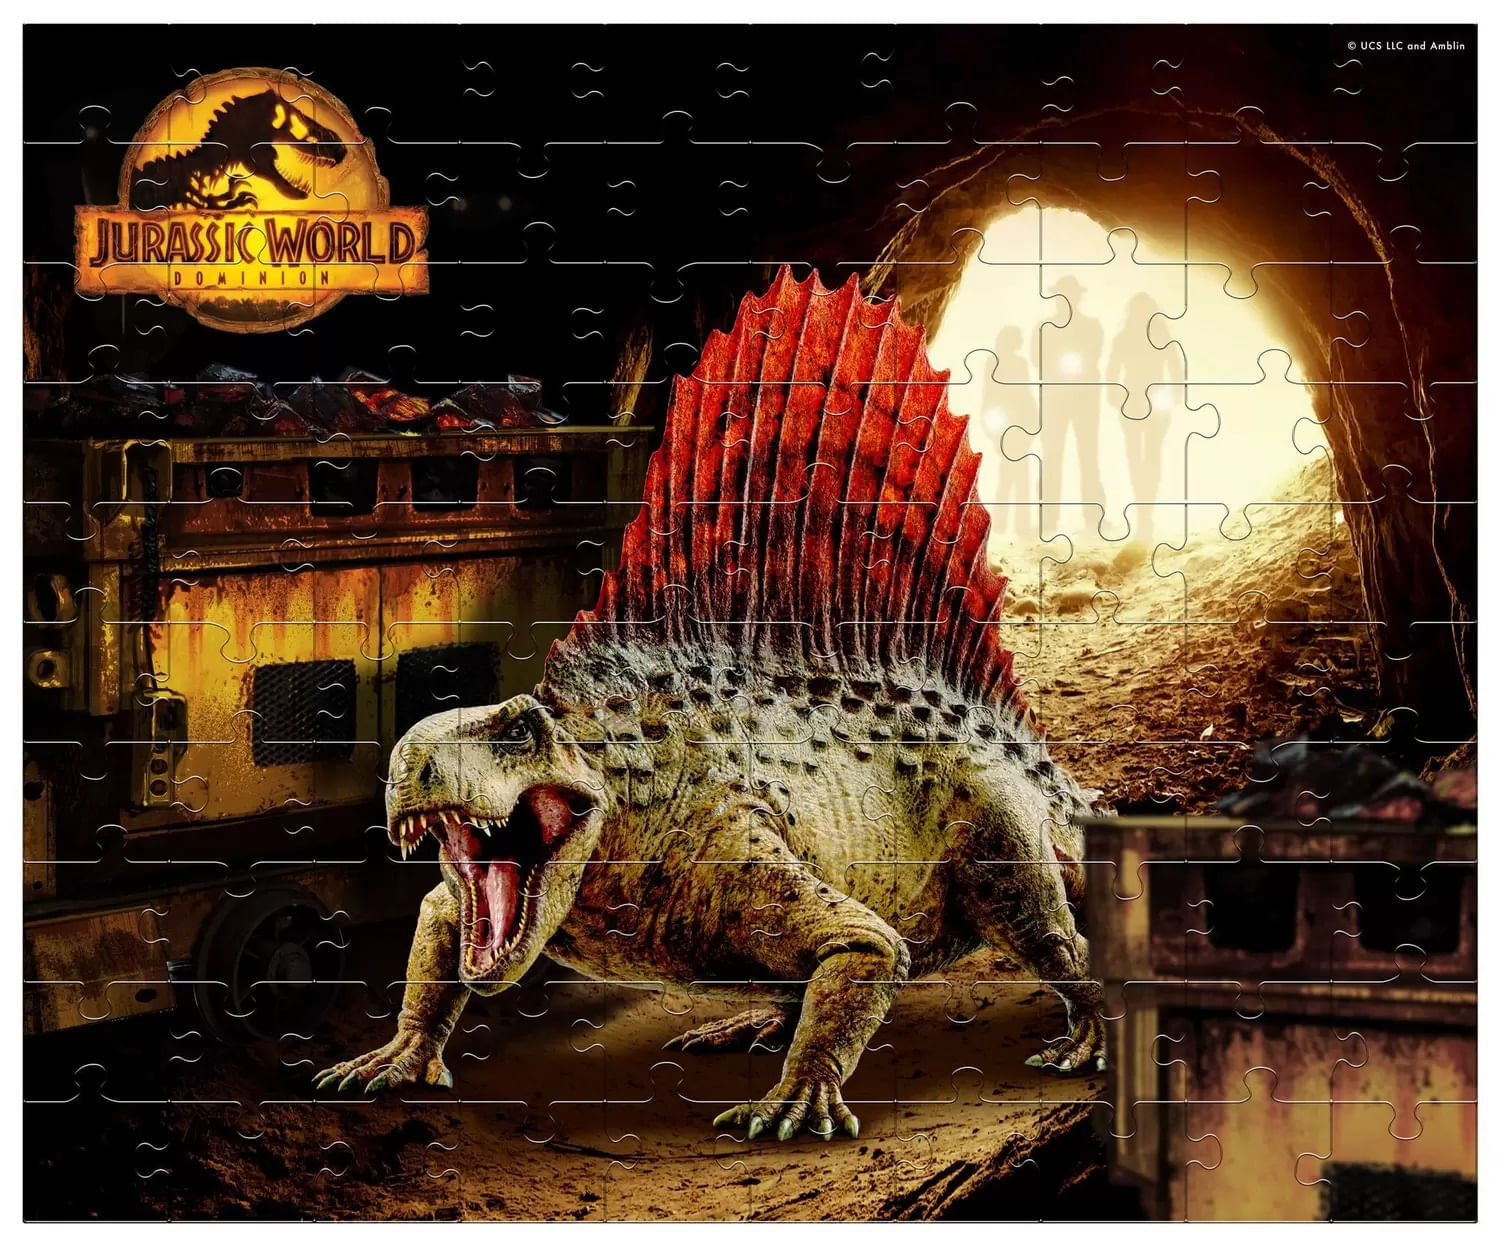 Jogo Mimo Jurassic World 8 Peças Para Encaixar